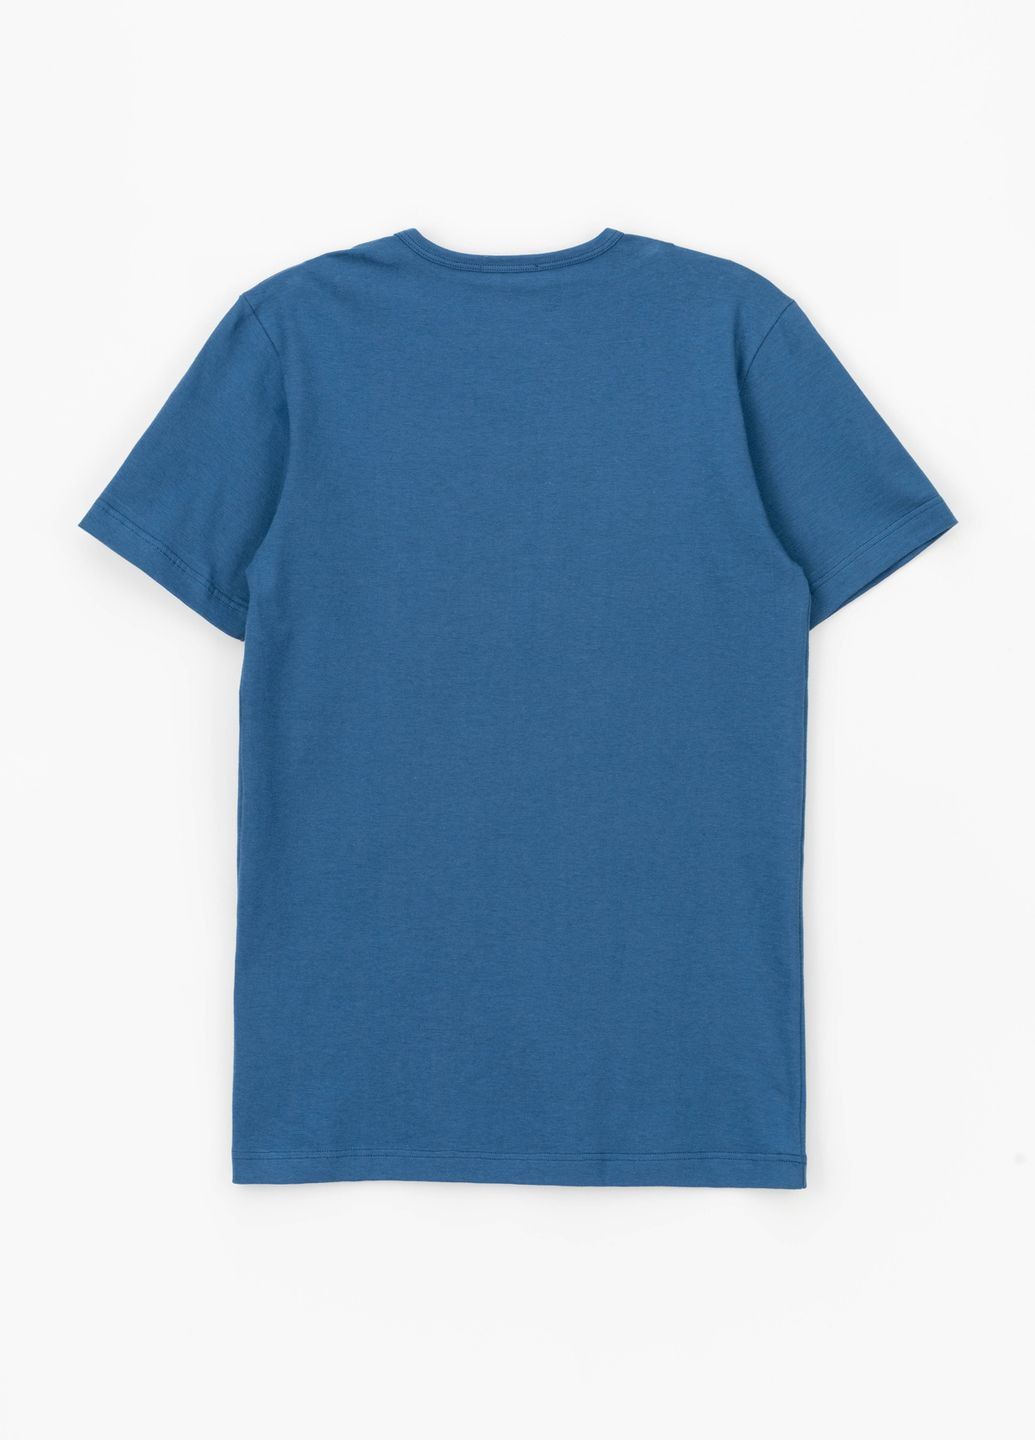 Синий демисезонный комплект белья футболка + трусы No Brand